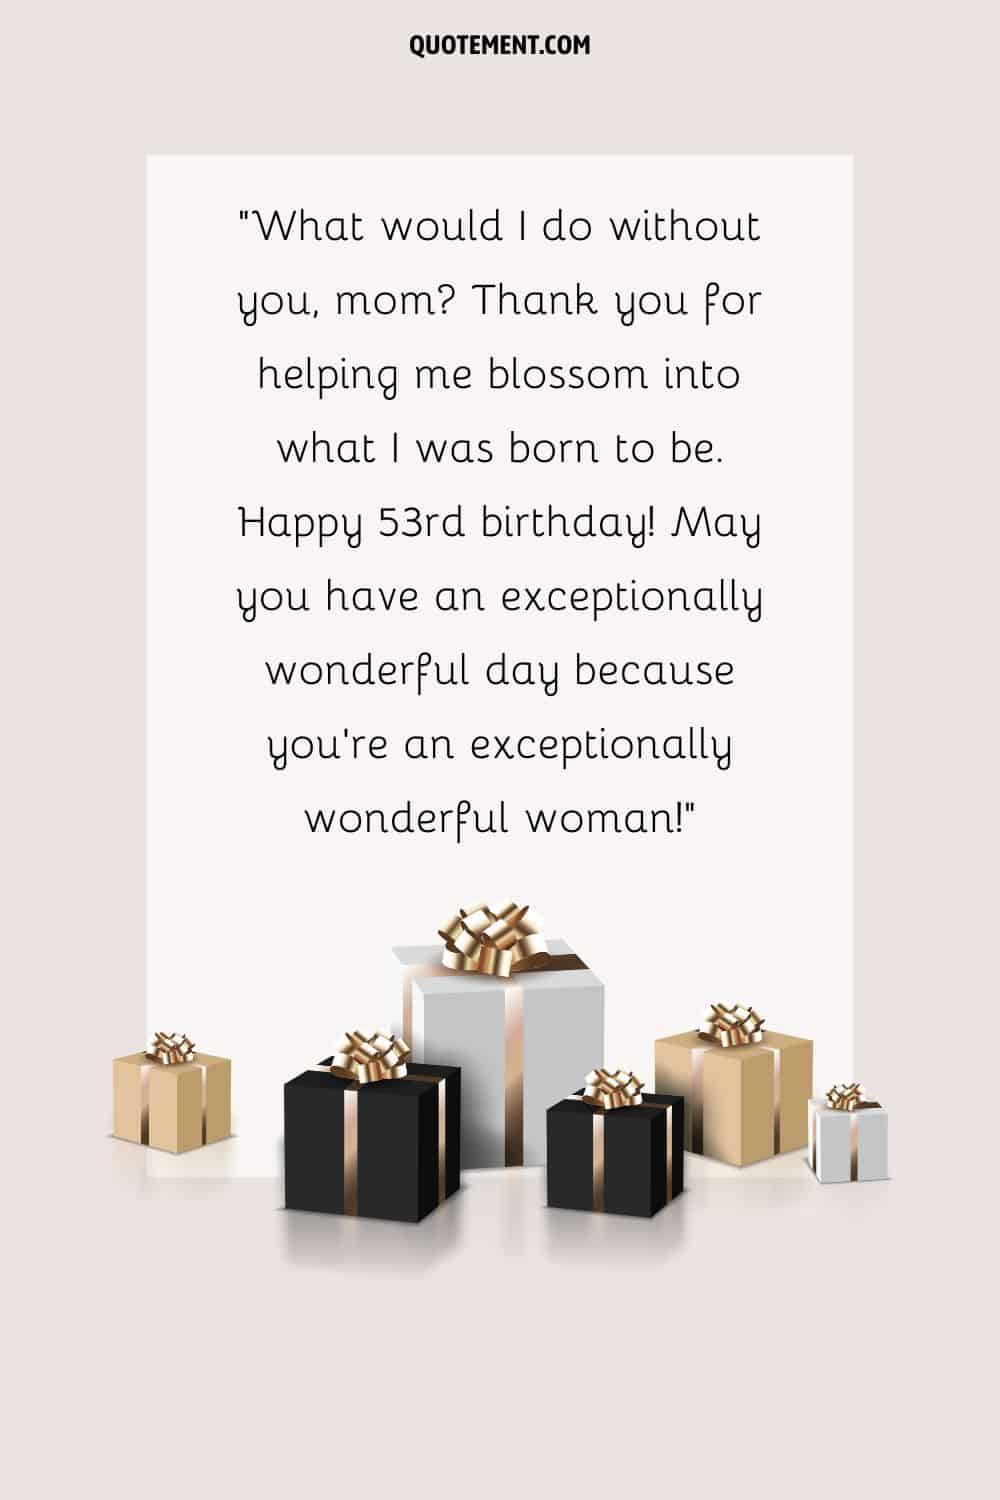 Conmovedor mensaje por el 53 cumpleaños de una madre y sus regalos